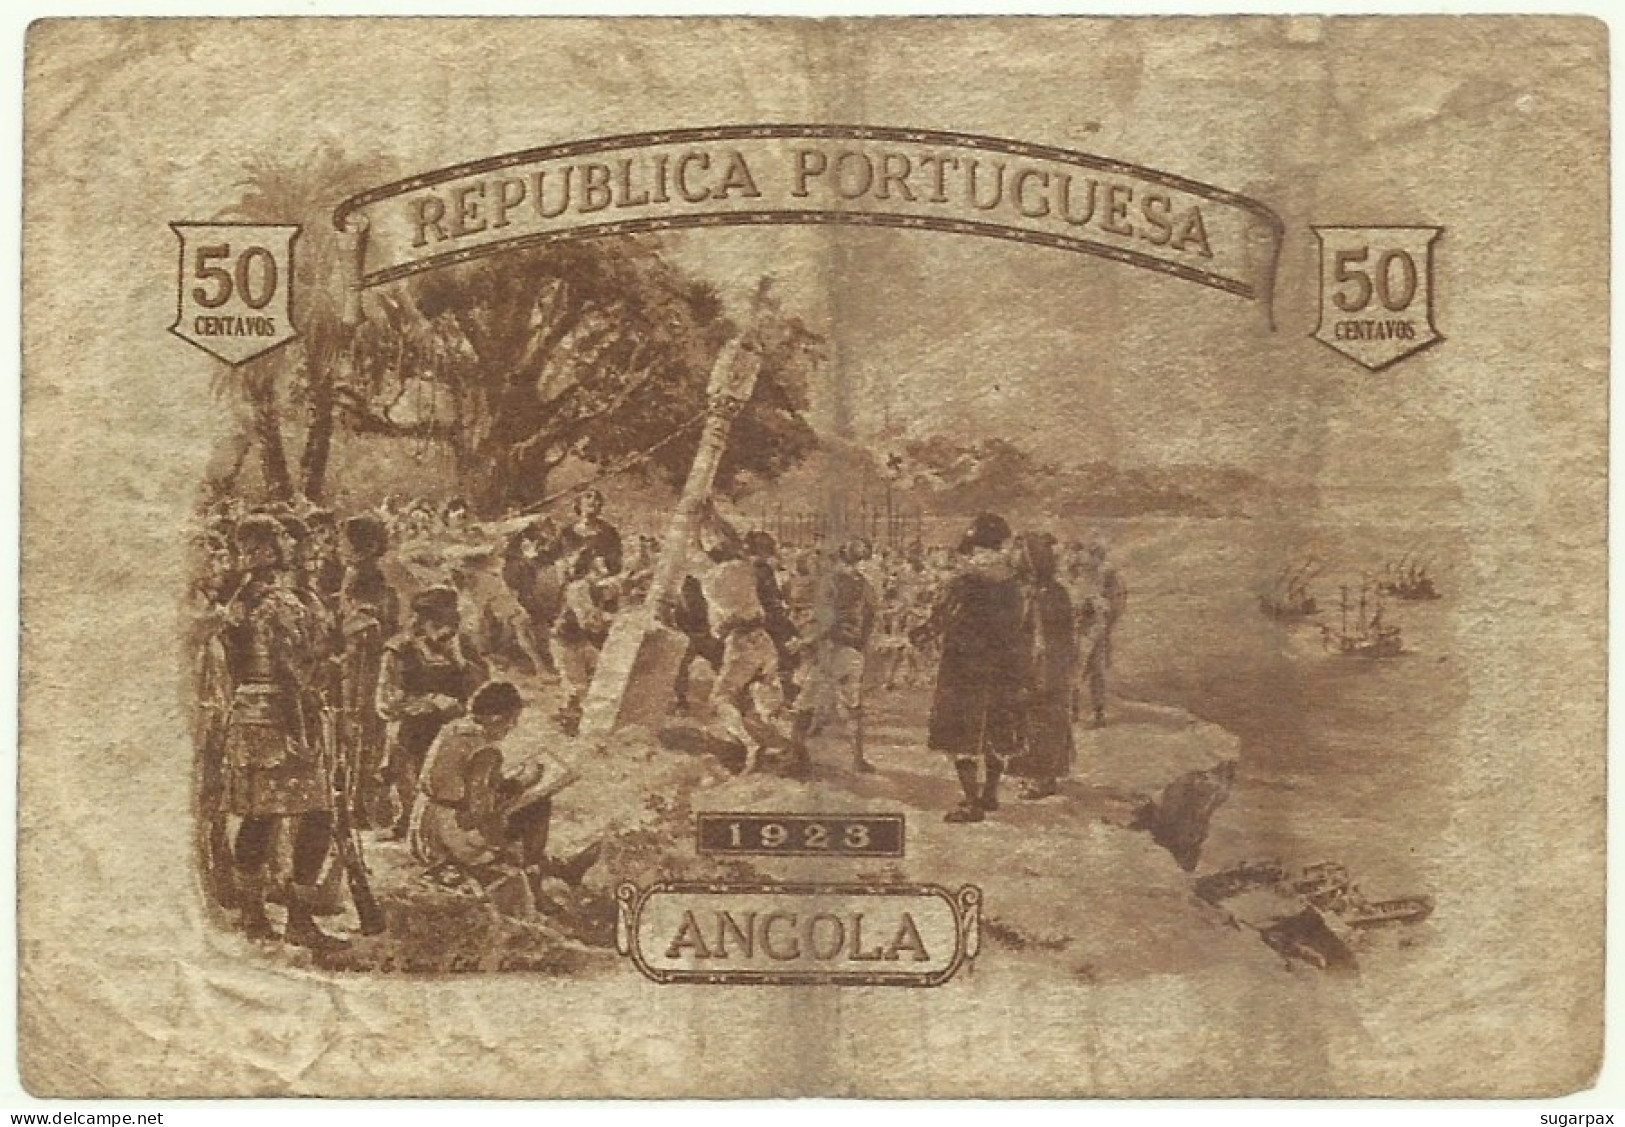 Angola - A Célebre RITA - 50 Centavos - 1923 - Pick 63 - Série H/8 - M.A. 2536 - Cédula - Republica Portuguesa - Angola